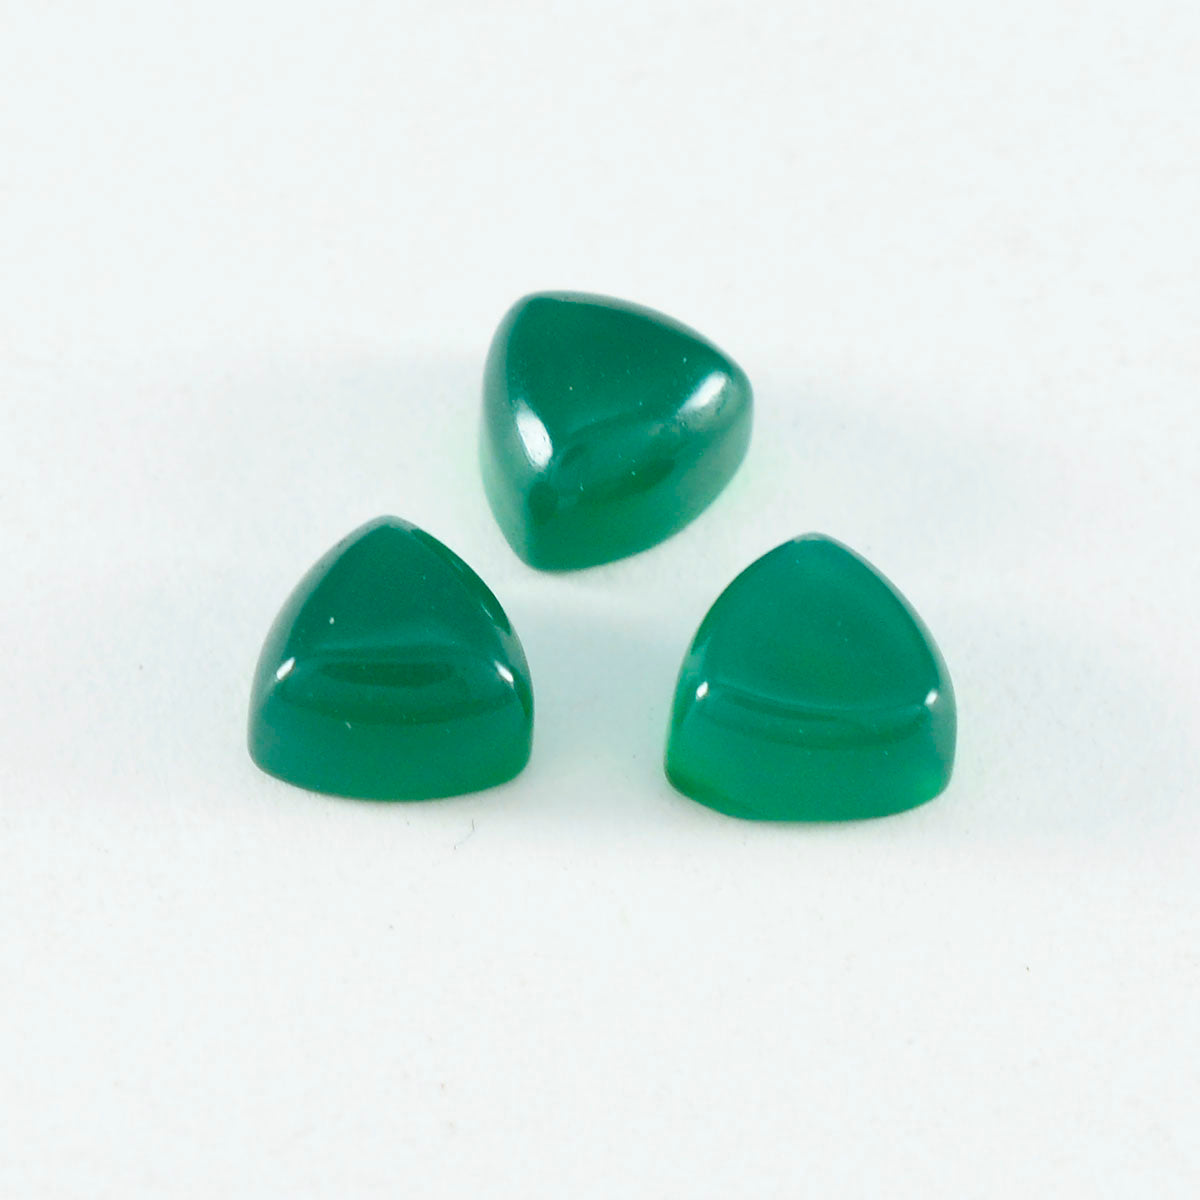 Riyogems 1PC Green Onyx Cabochon 12x12 mm Trillion Shape superb Quality Loose Gemstone